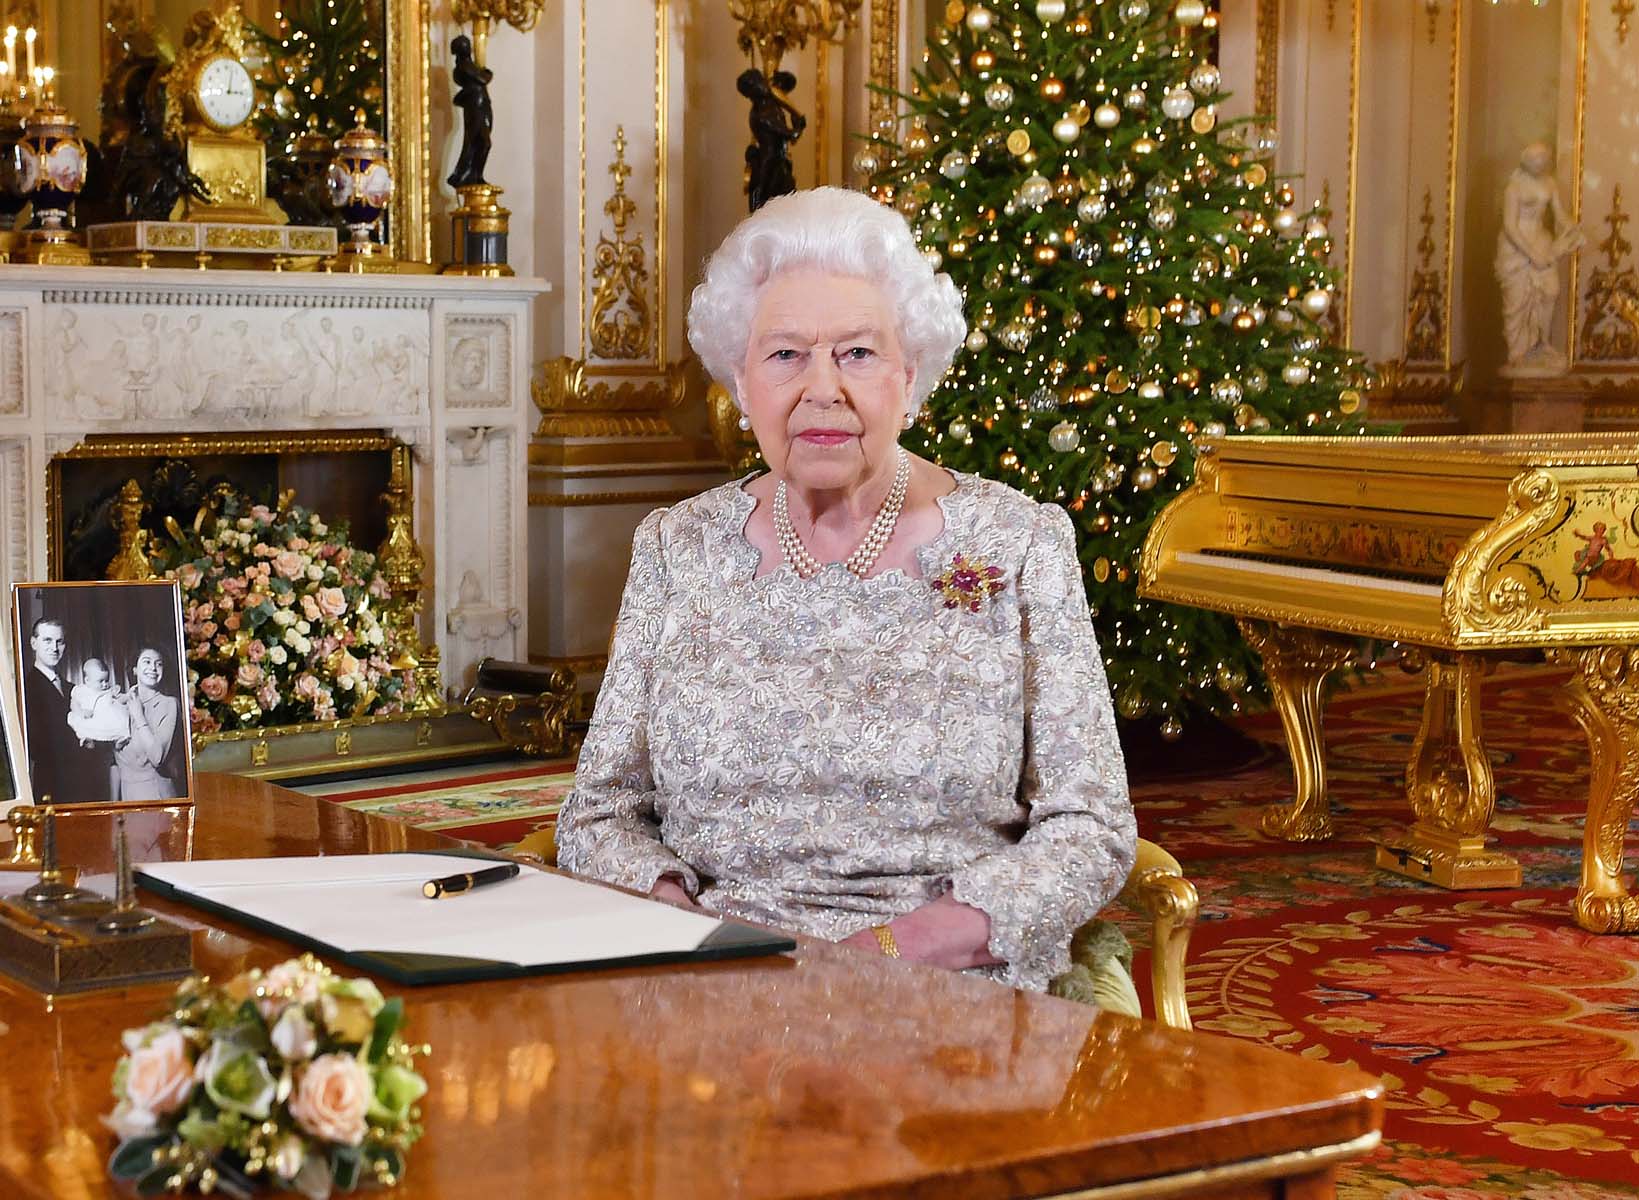 La reina Isabel dice que ha estado ocupada con dos bodas, dos bebés y otro que se espera pronto